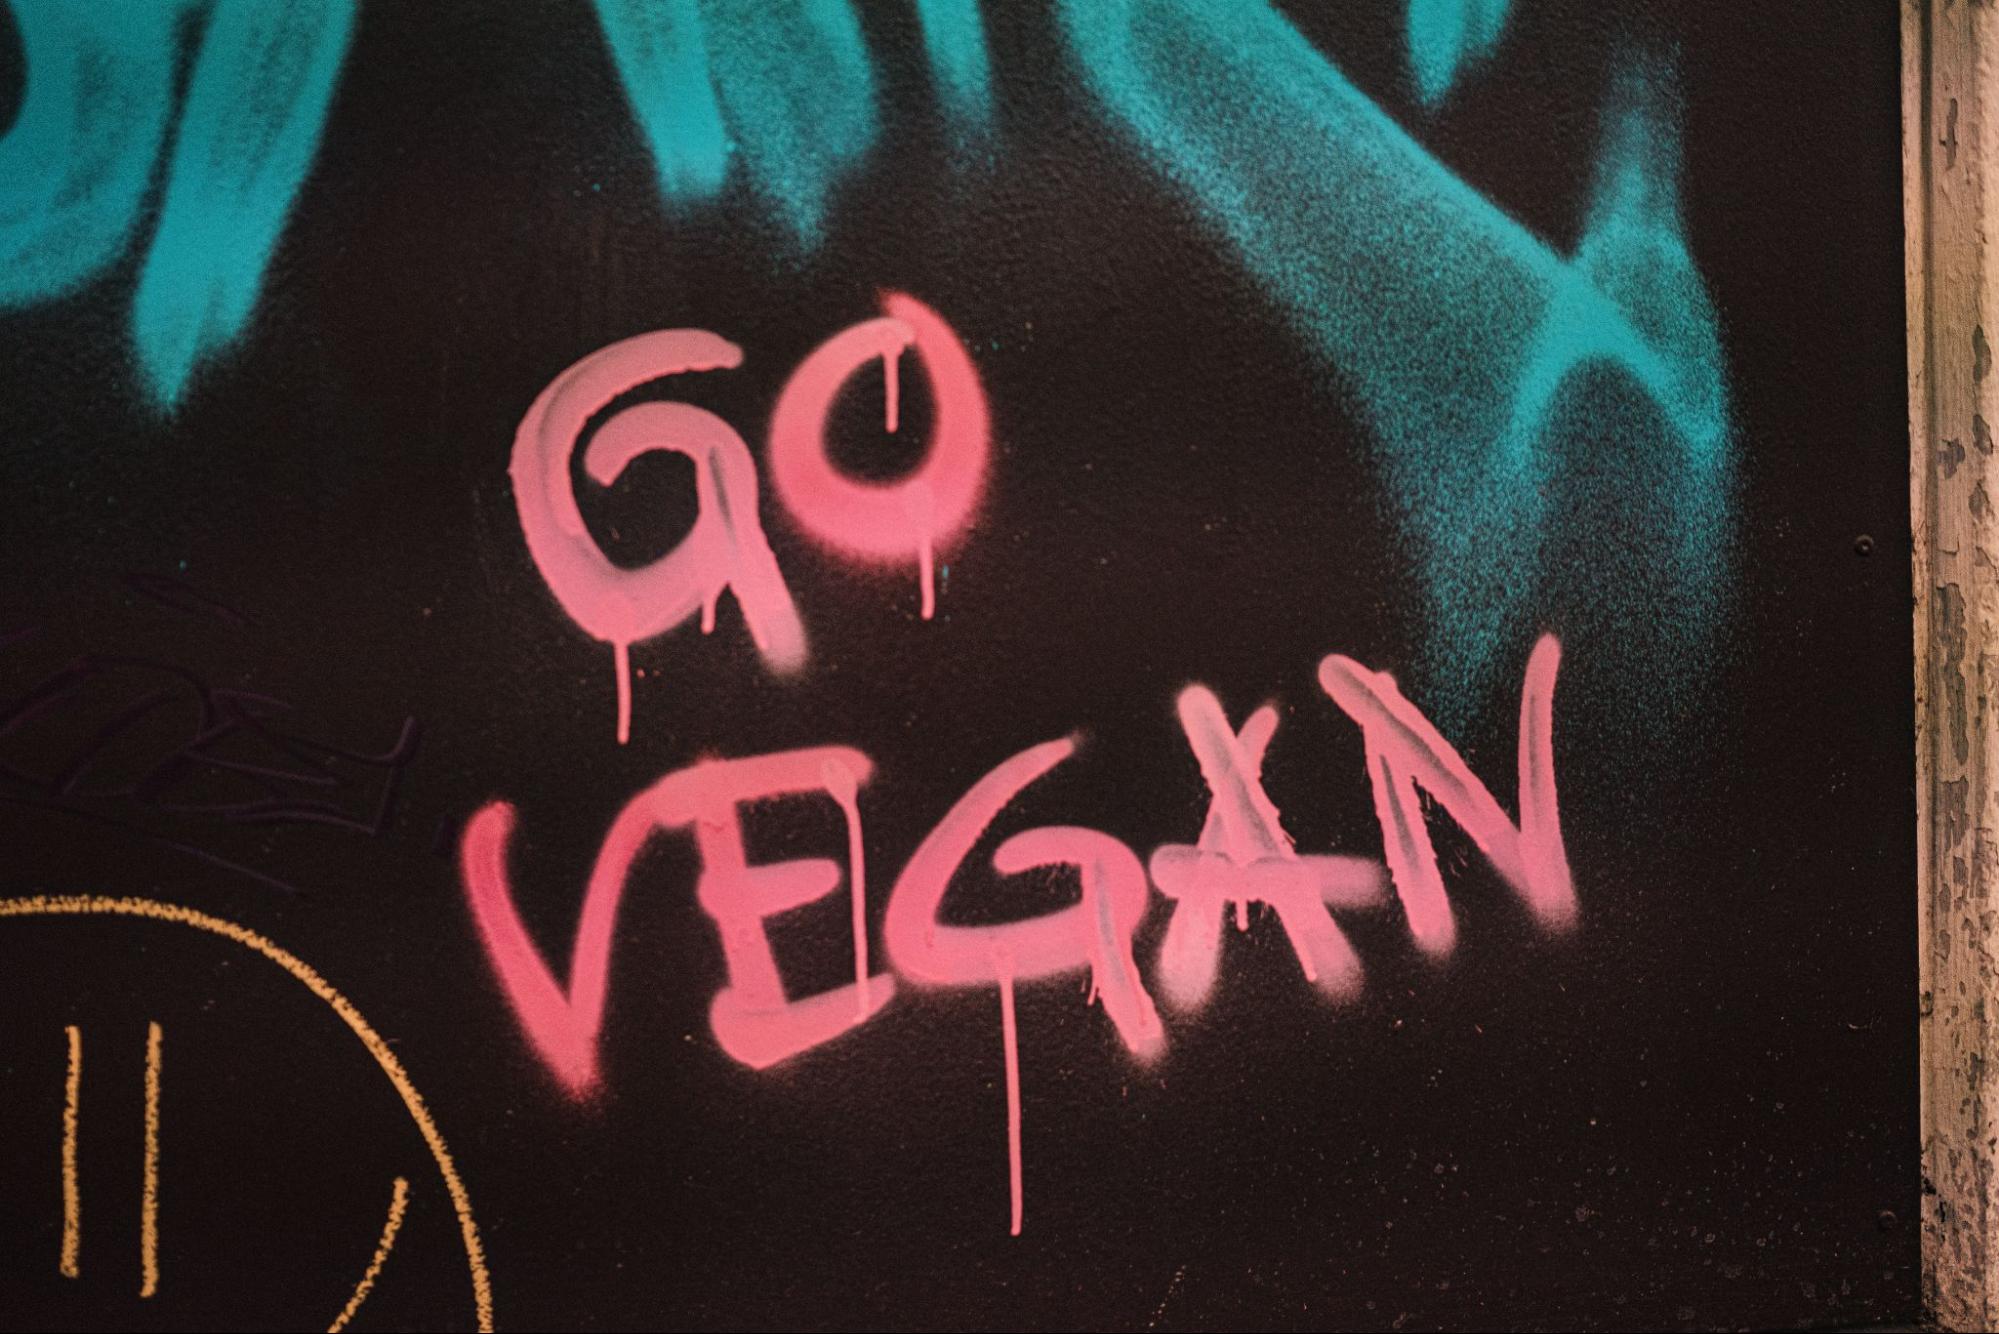 Graffiti in red saying: "Go Vegan"